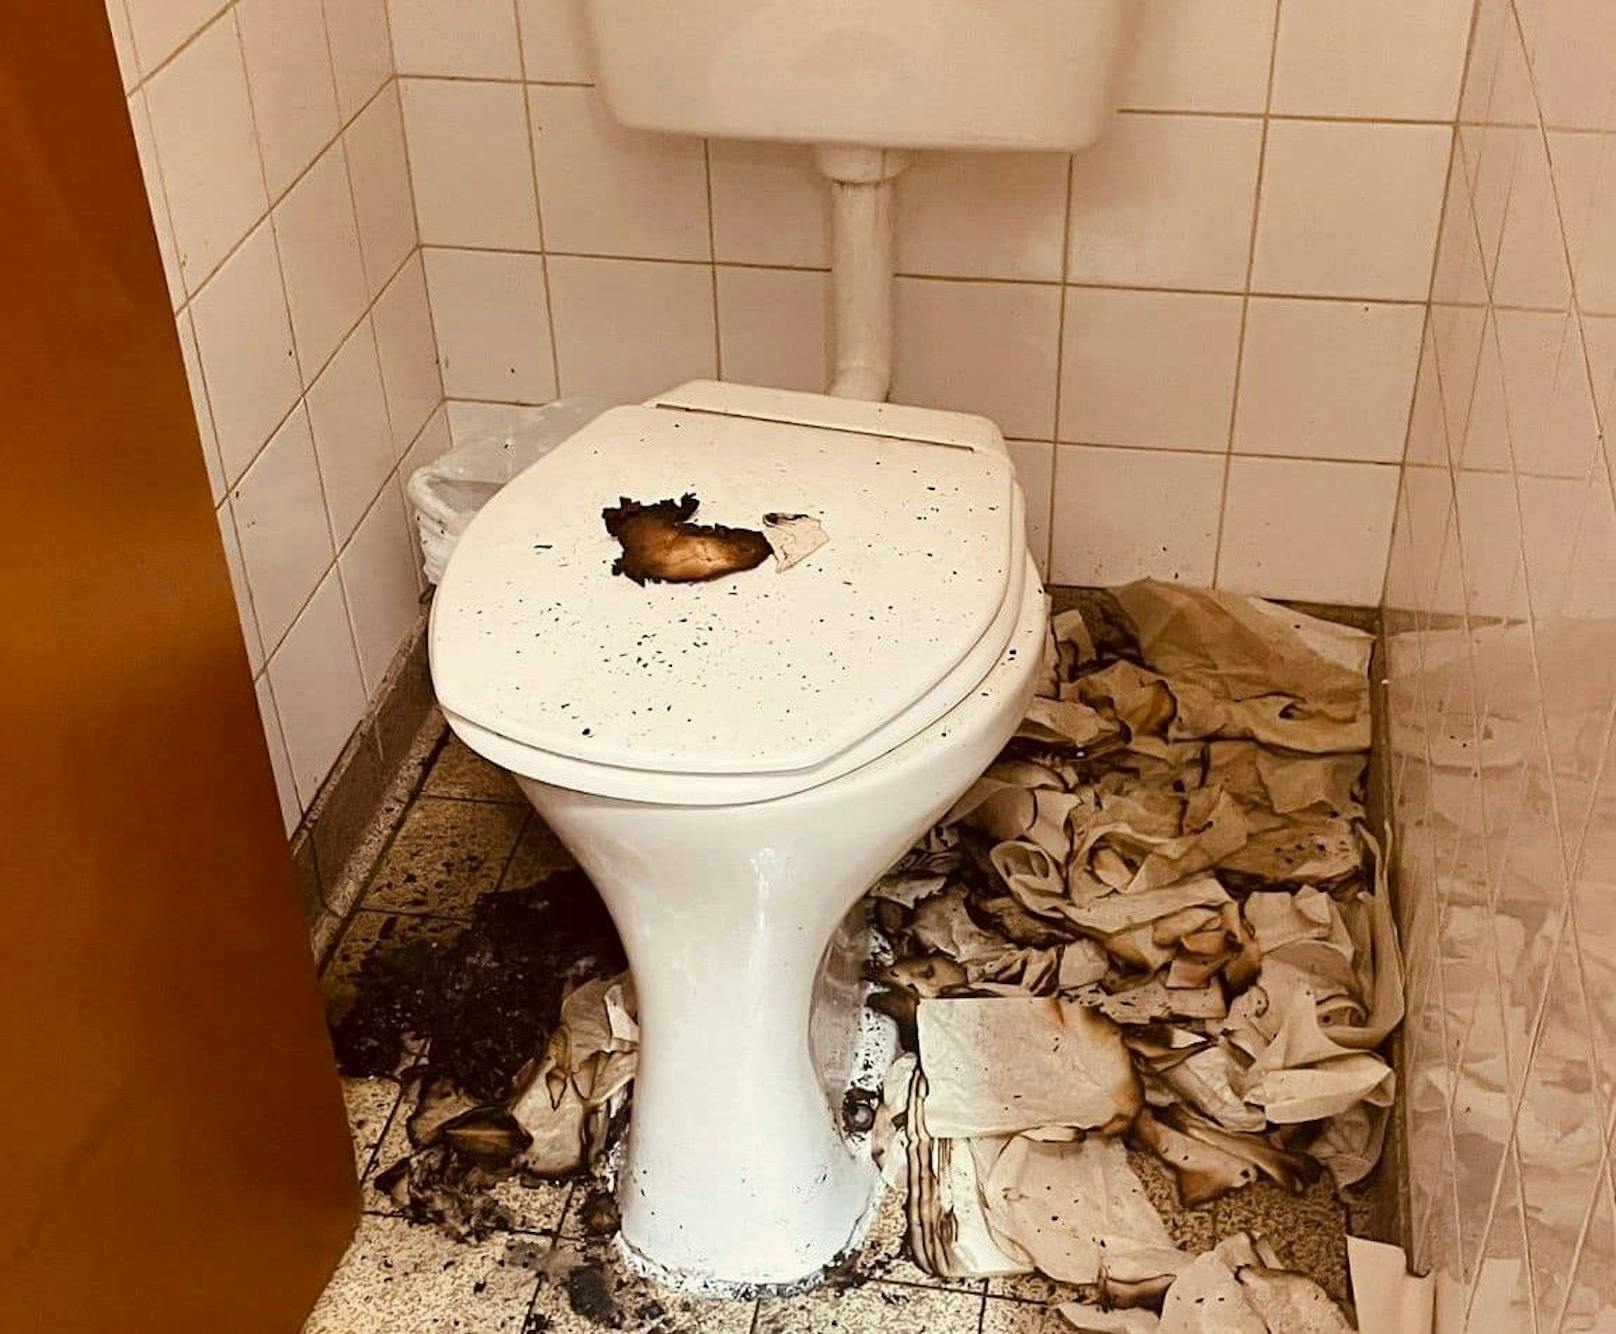 WC-Anlage wurde stark verrußt.